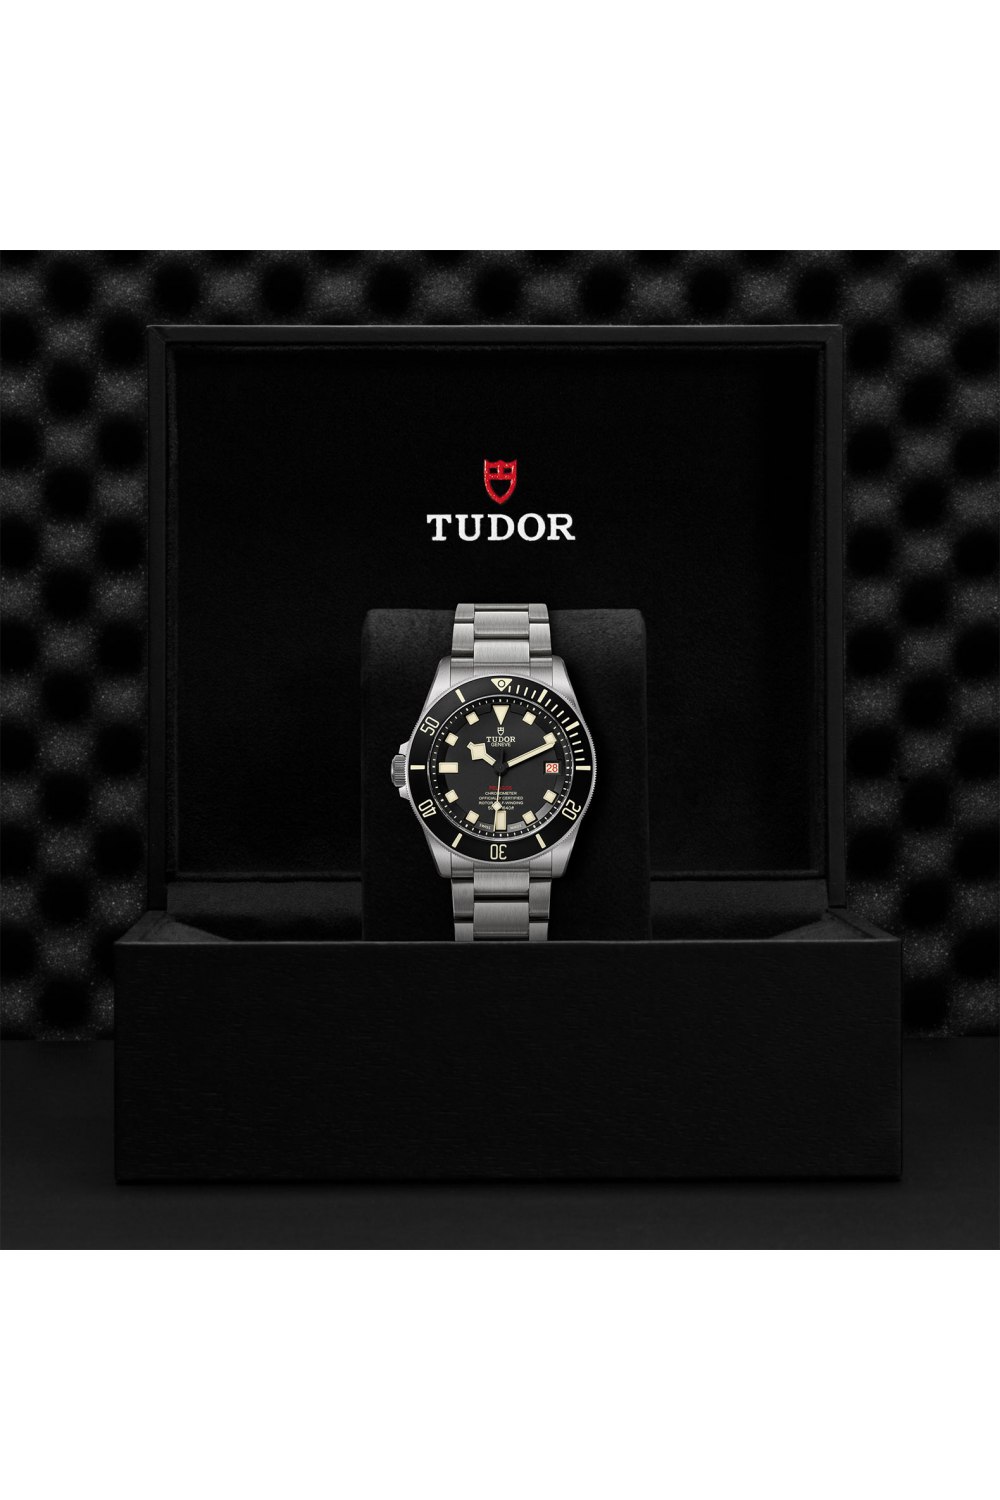 Tudor Pelagos Ceramic matt black disc titanium bracelet